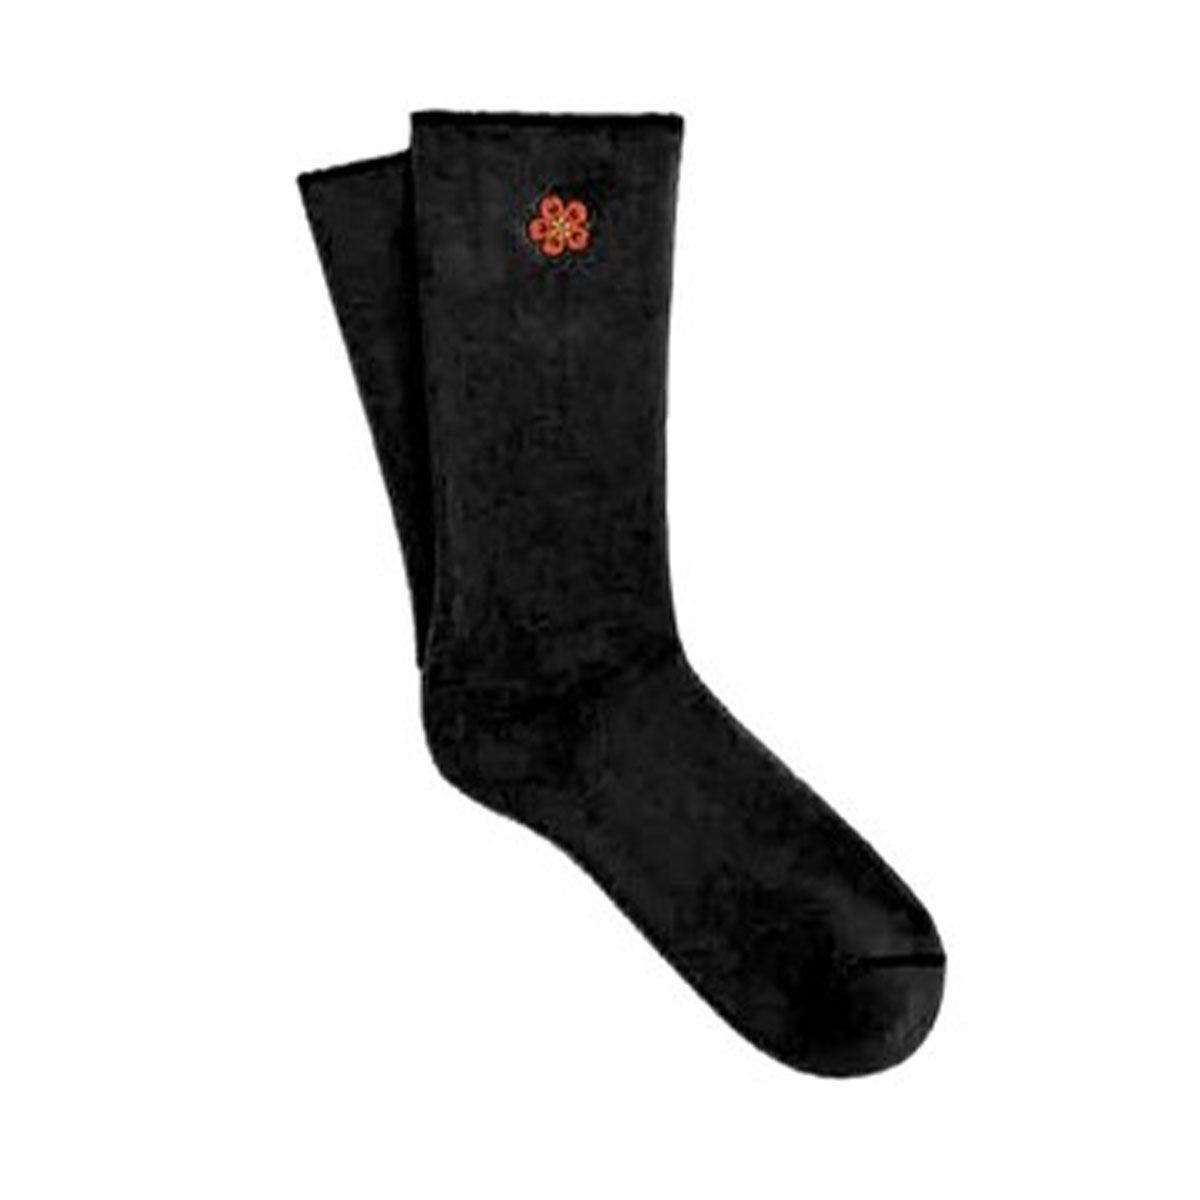 Kenzo 'Boke Flower' Crest Socks/Black